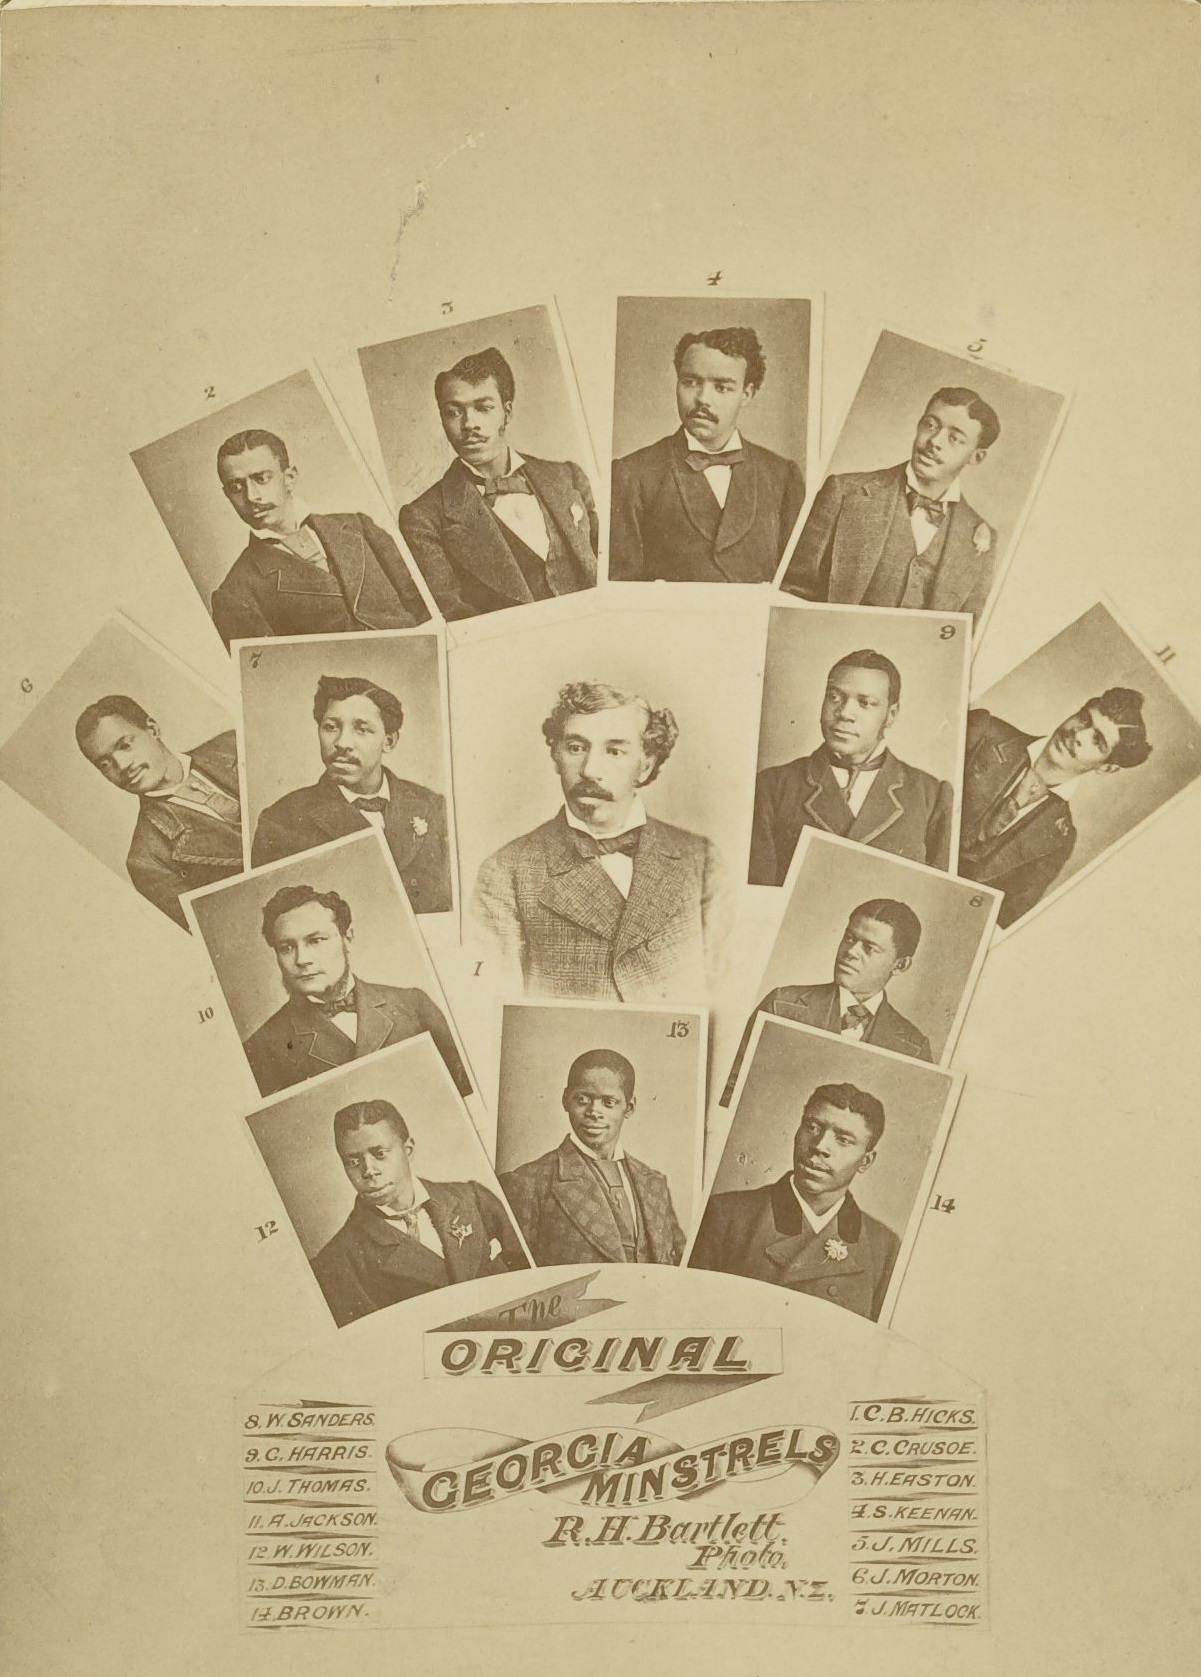 "Original Georgia Minstrels" composite image with founder Charles Hicks at center